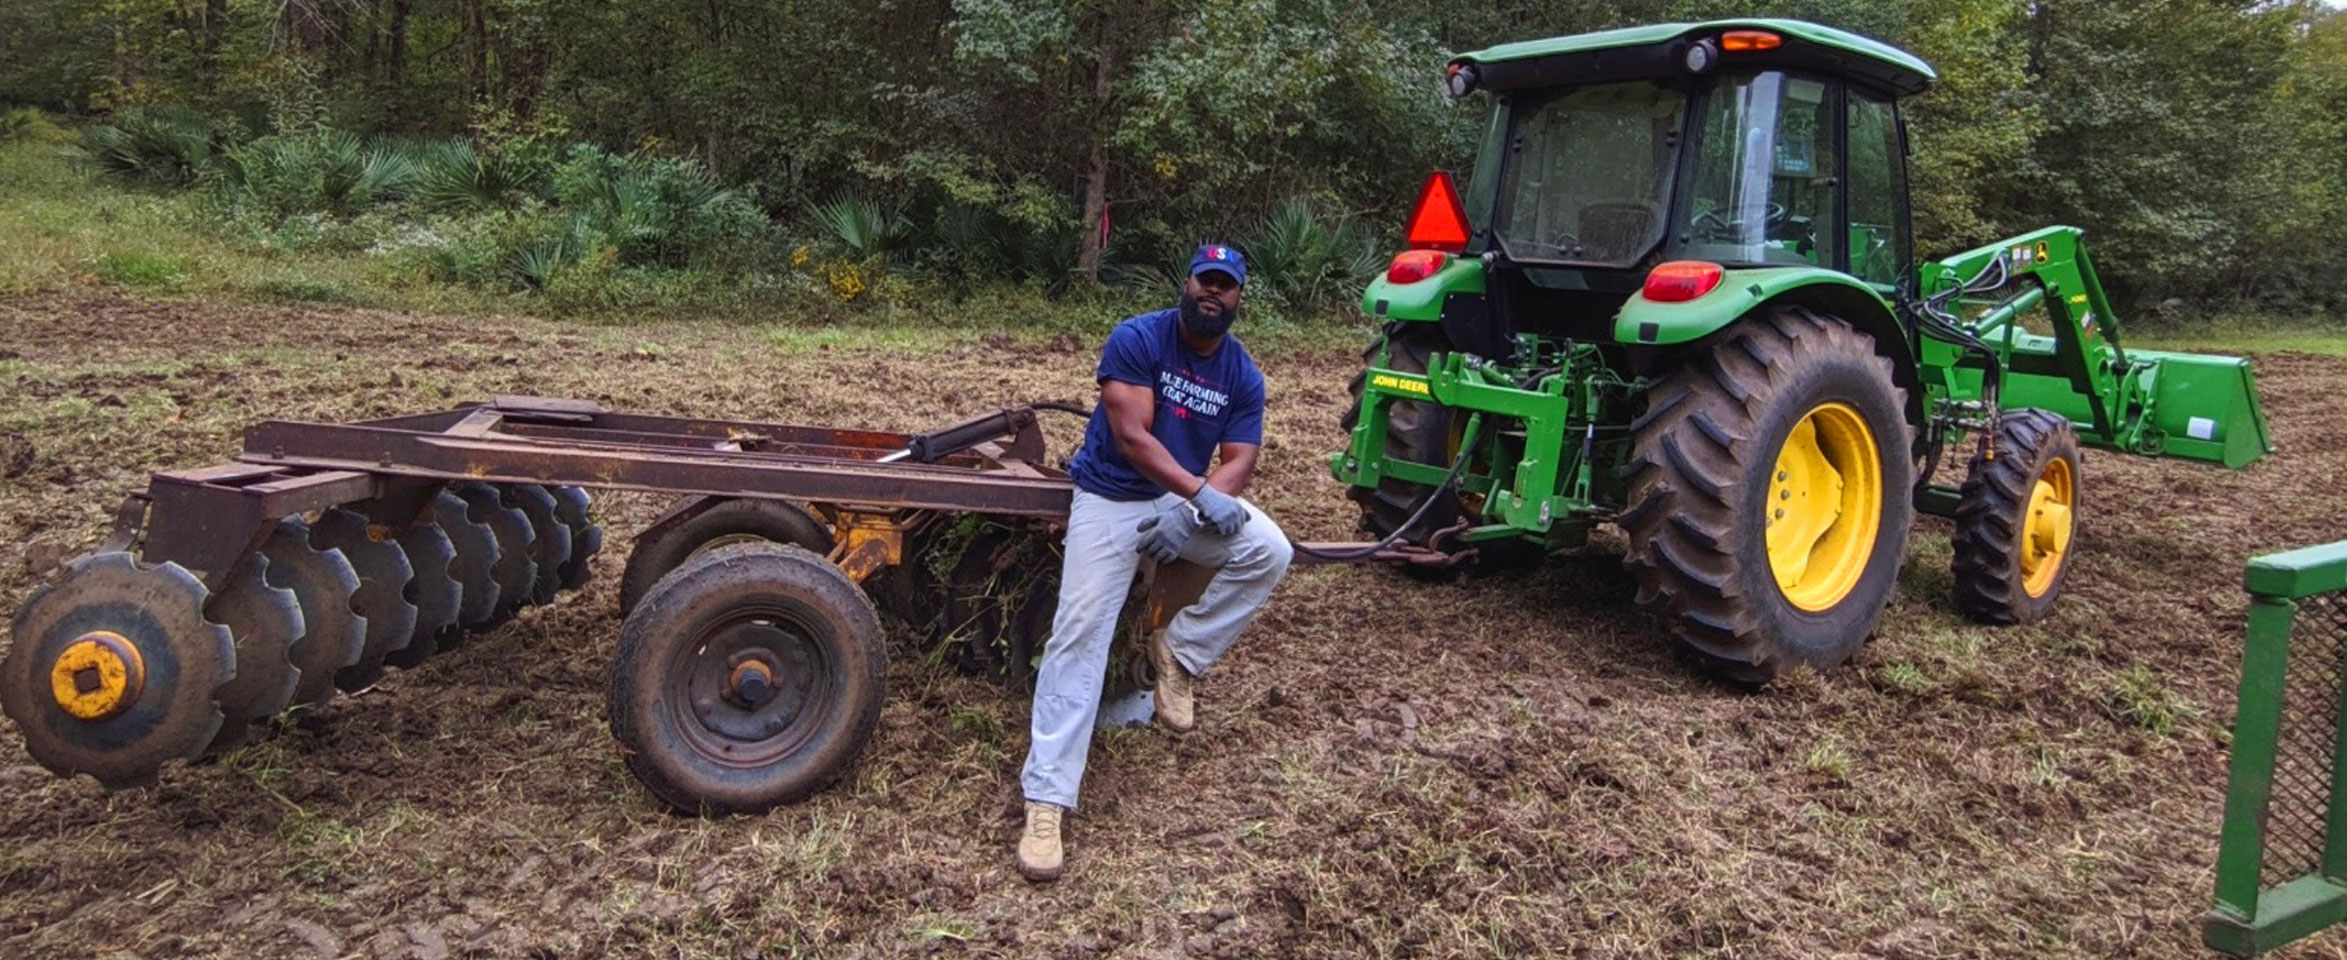 Christopher Joe, AL, con una camiseta azul que dice “Maker Farming Great Again” y jeans azul claro apoyados en el equipo del tractor.